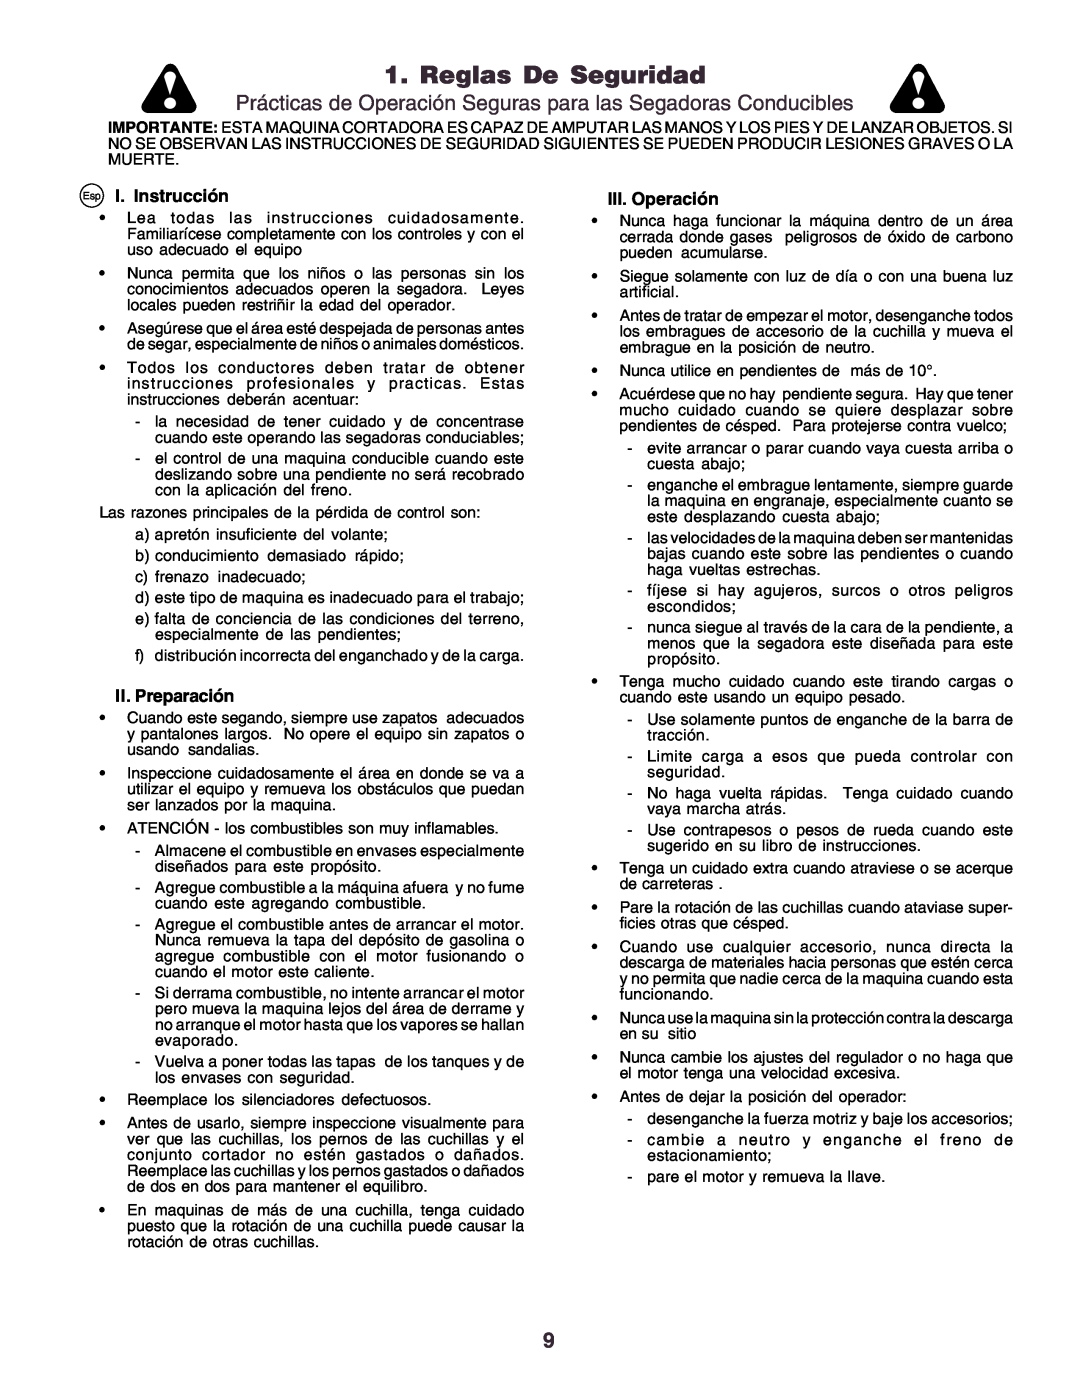 Husqvarna YTH170 instruction manual Reglas De Seguridad, Esp I. Instrucción, II. Preparación, III.Operación 